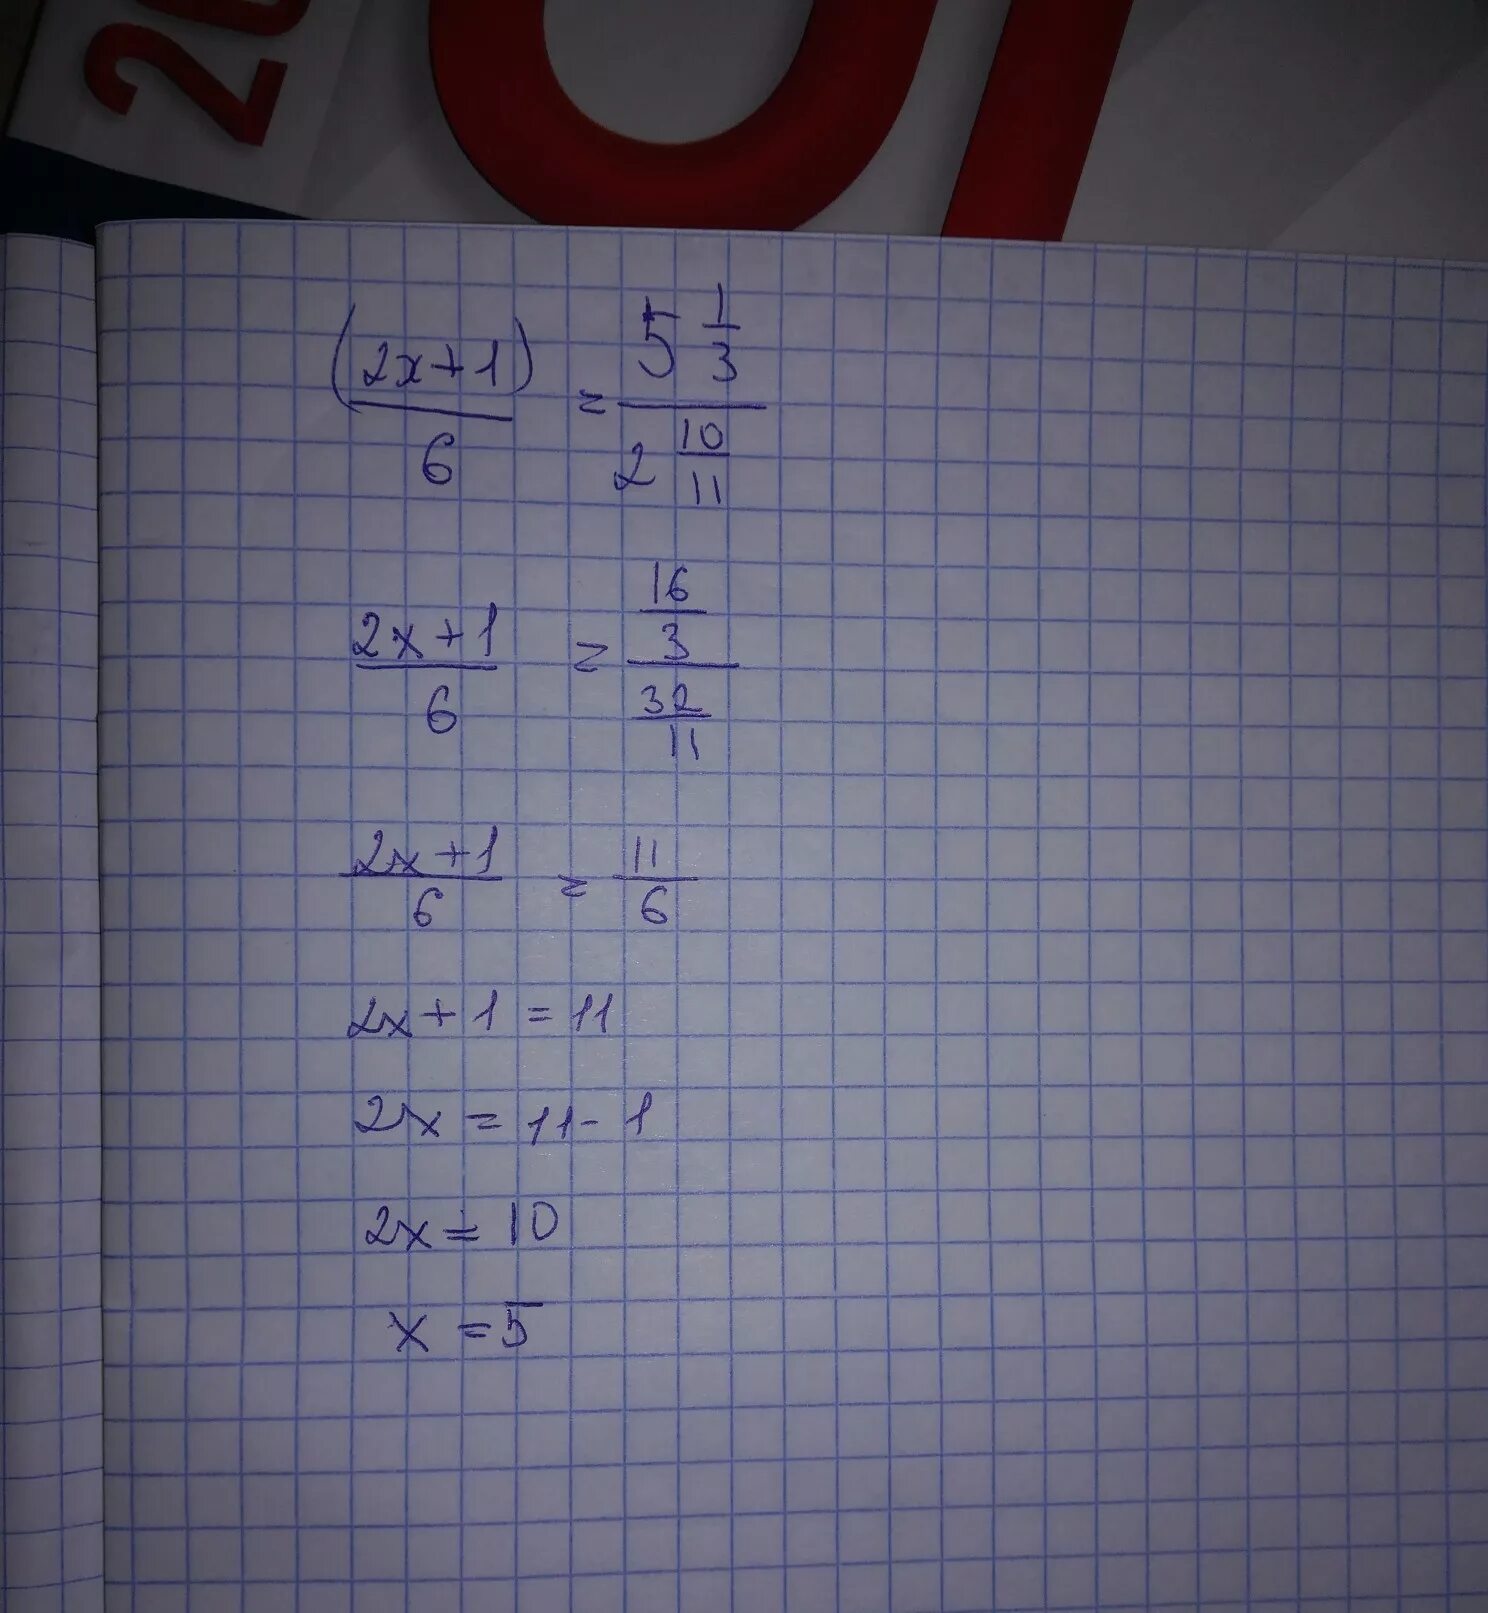 5 1 32 решение. 0,5:6=1 1/6:Х. (Х-1):2-(У-1):6=5/3. Х-5,1=6,2. Решить 1,2*5,5.